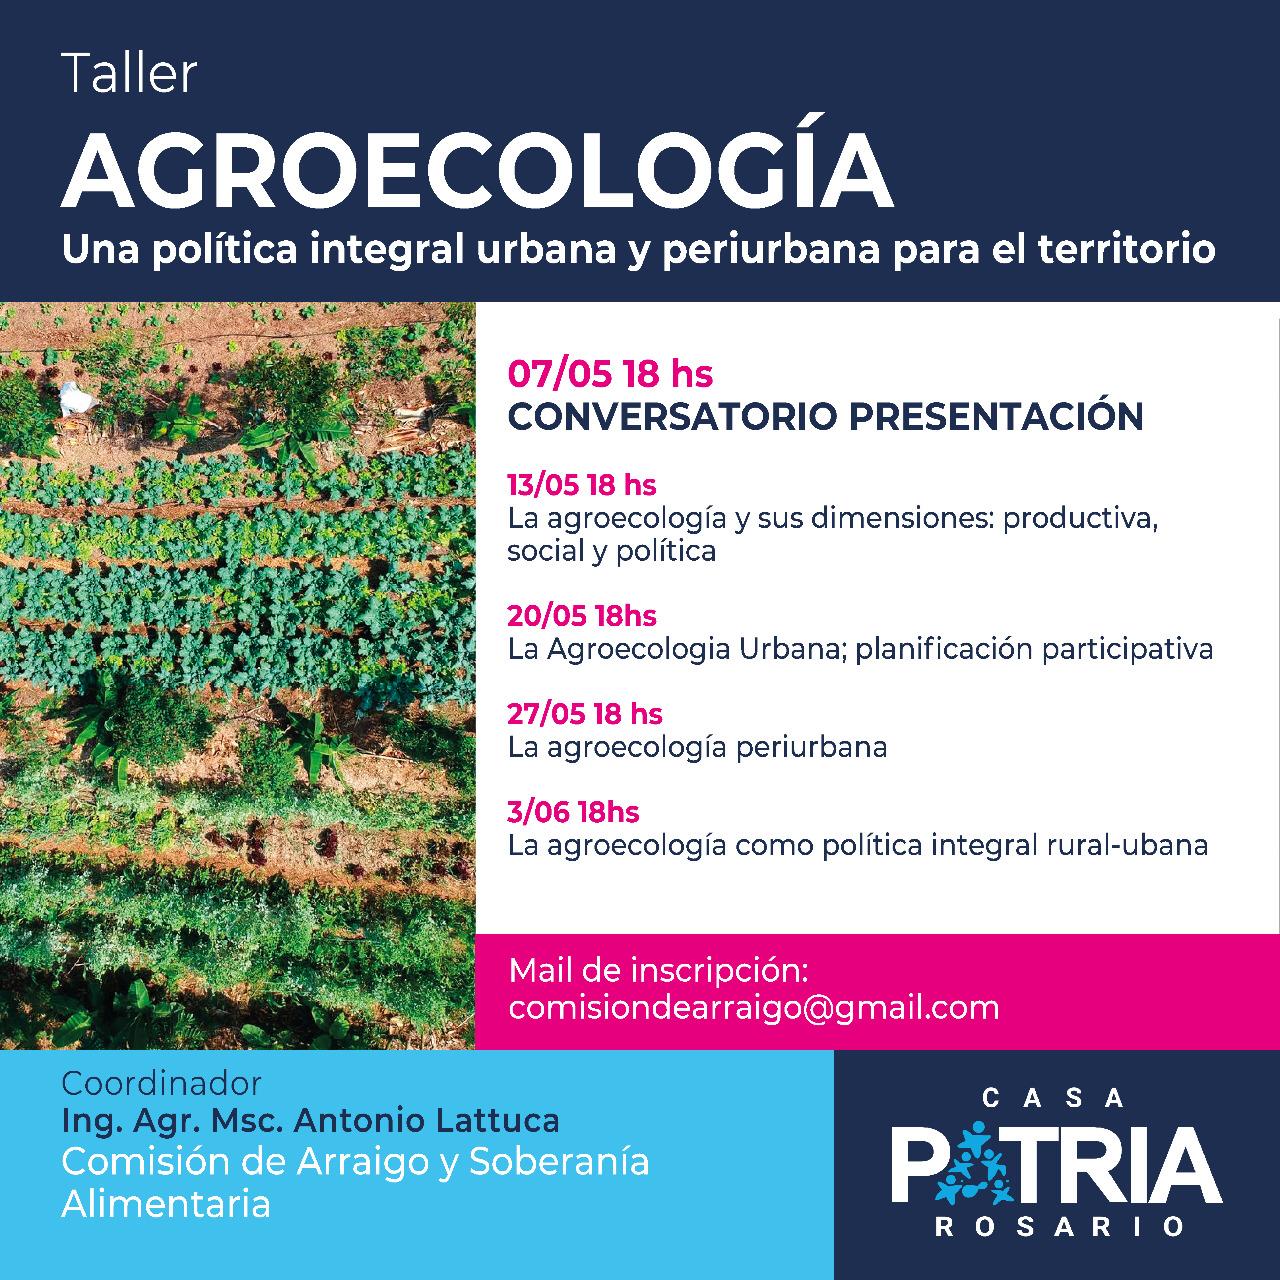 Taller de Agroecología – Una política integral urbana y periurbana para el territorio